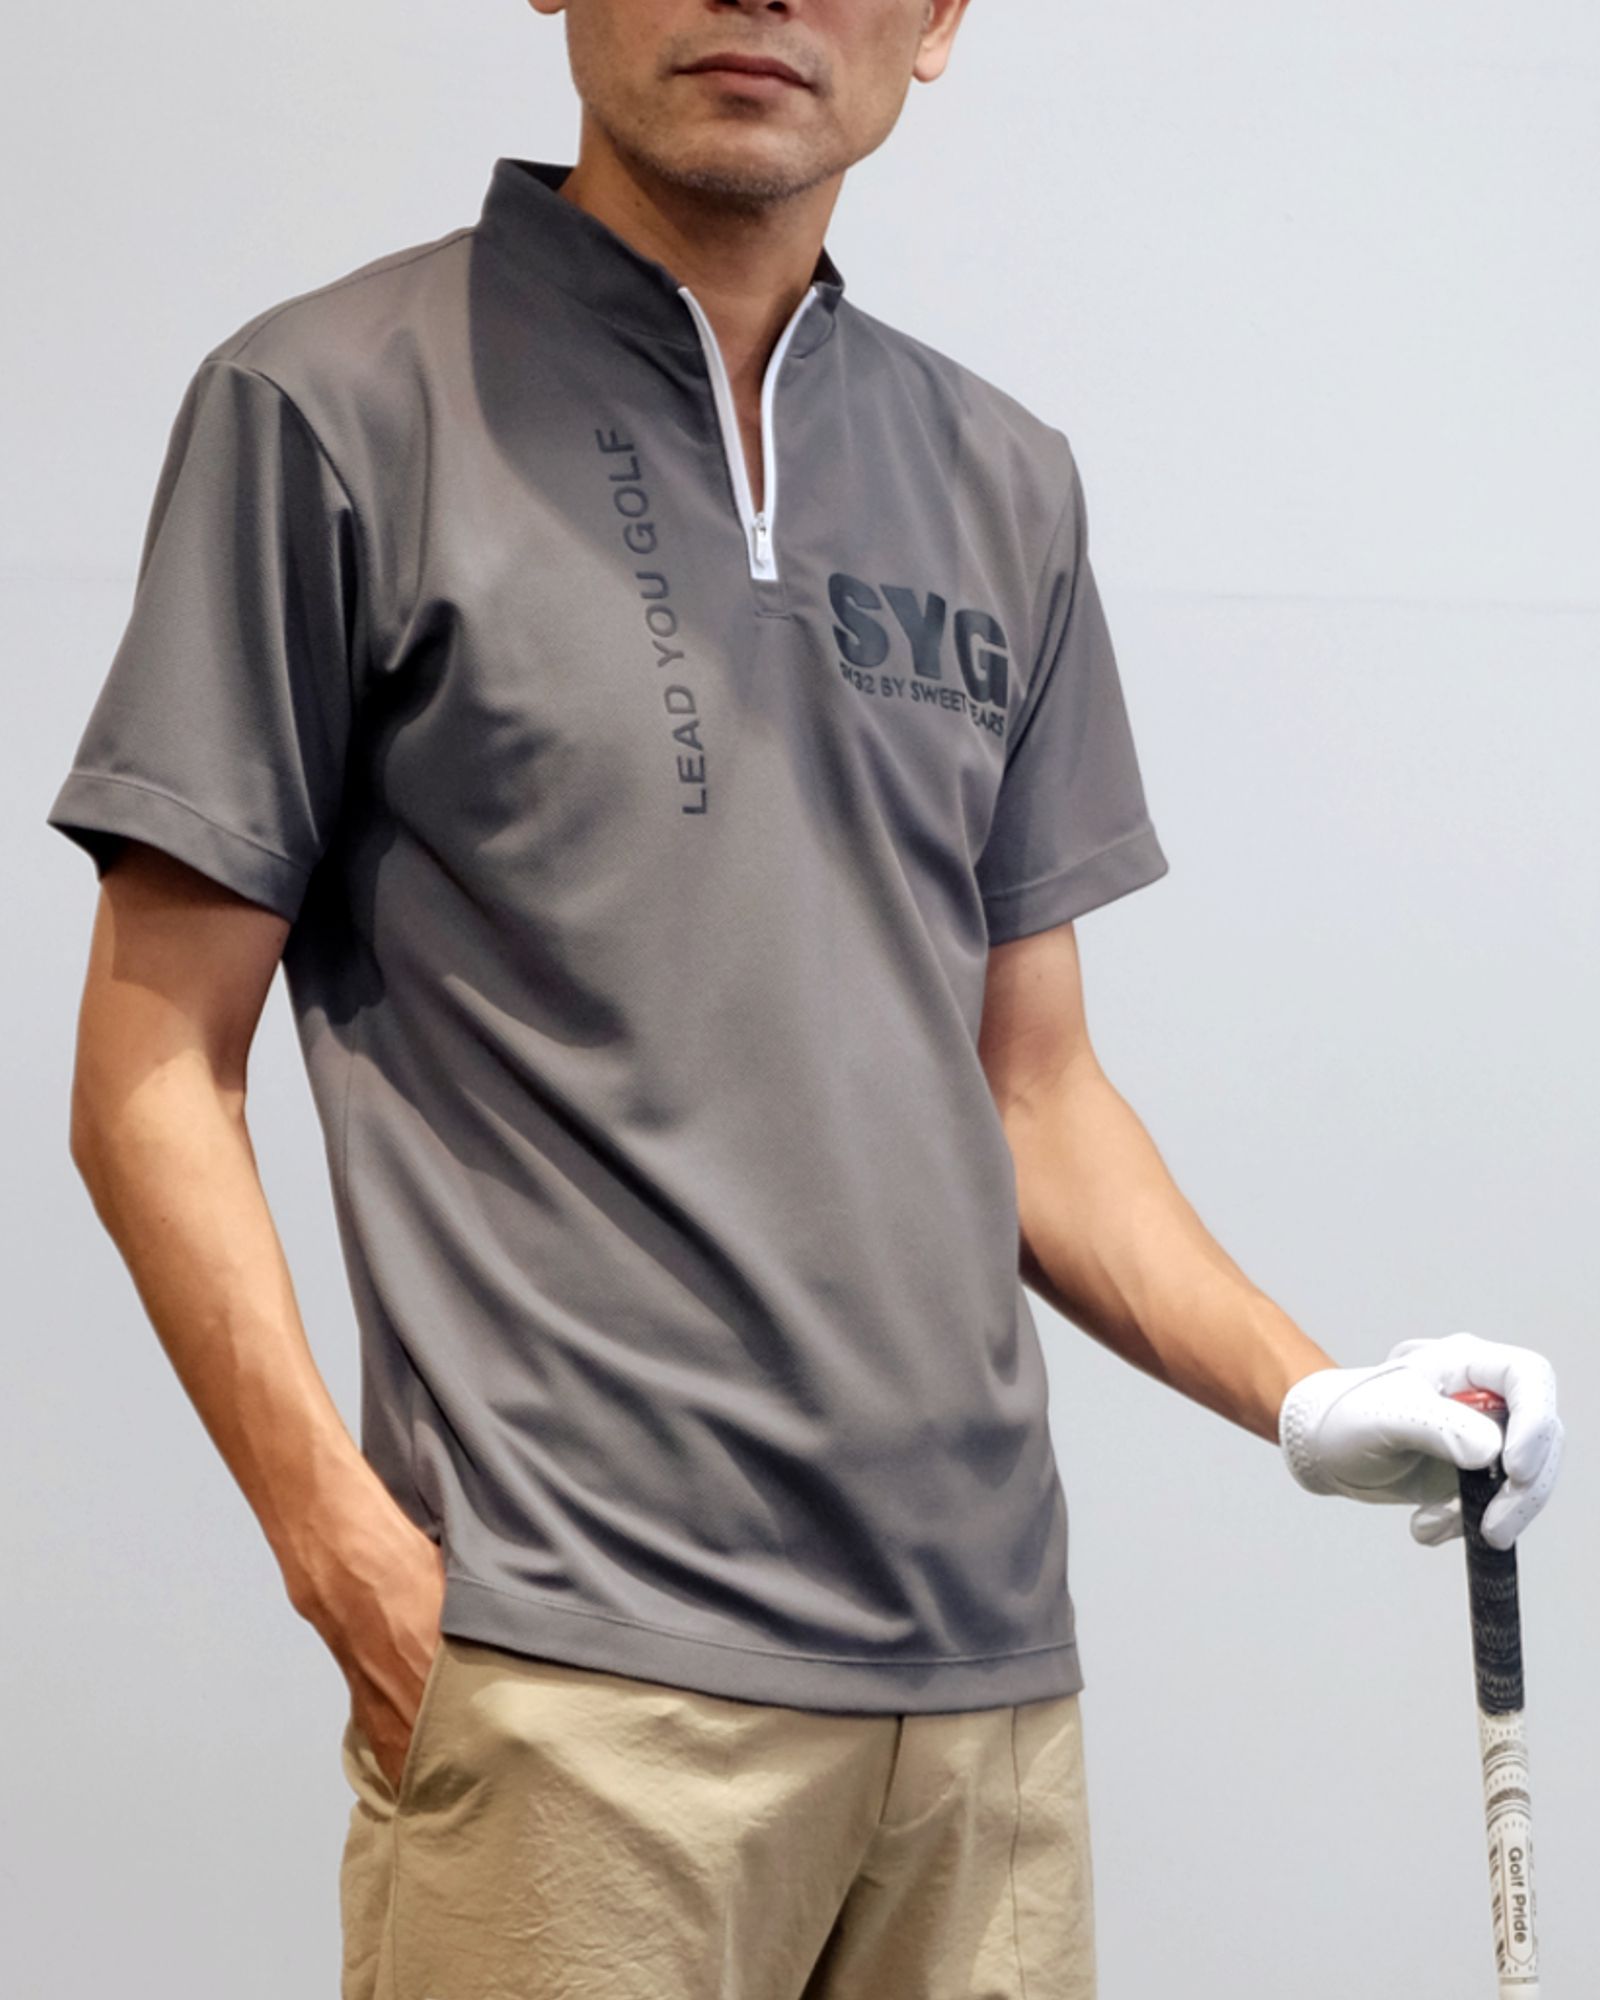 GOLF】ハーフジップポロシャツ & ロゴショートパンツ(SY32) スタイル 